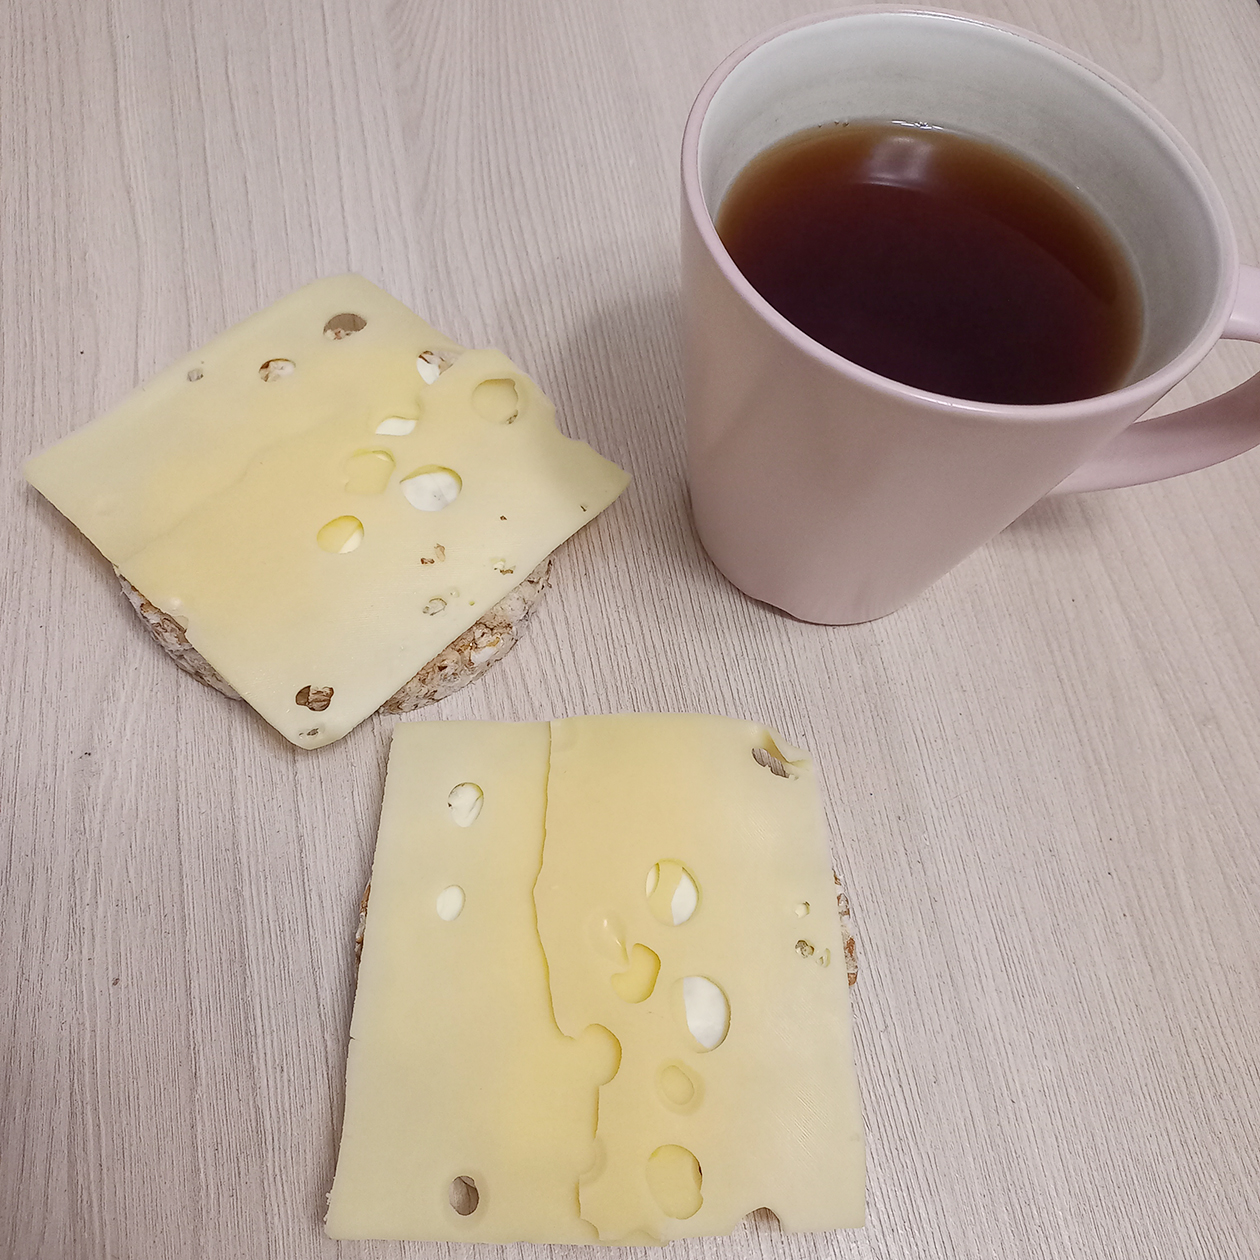 На завтрак круассан, который не попал в кадр, два хлебца с сыром и кофе